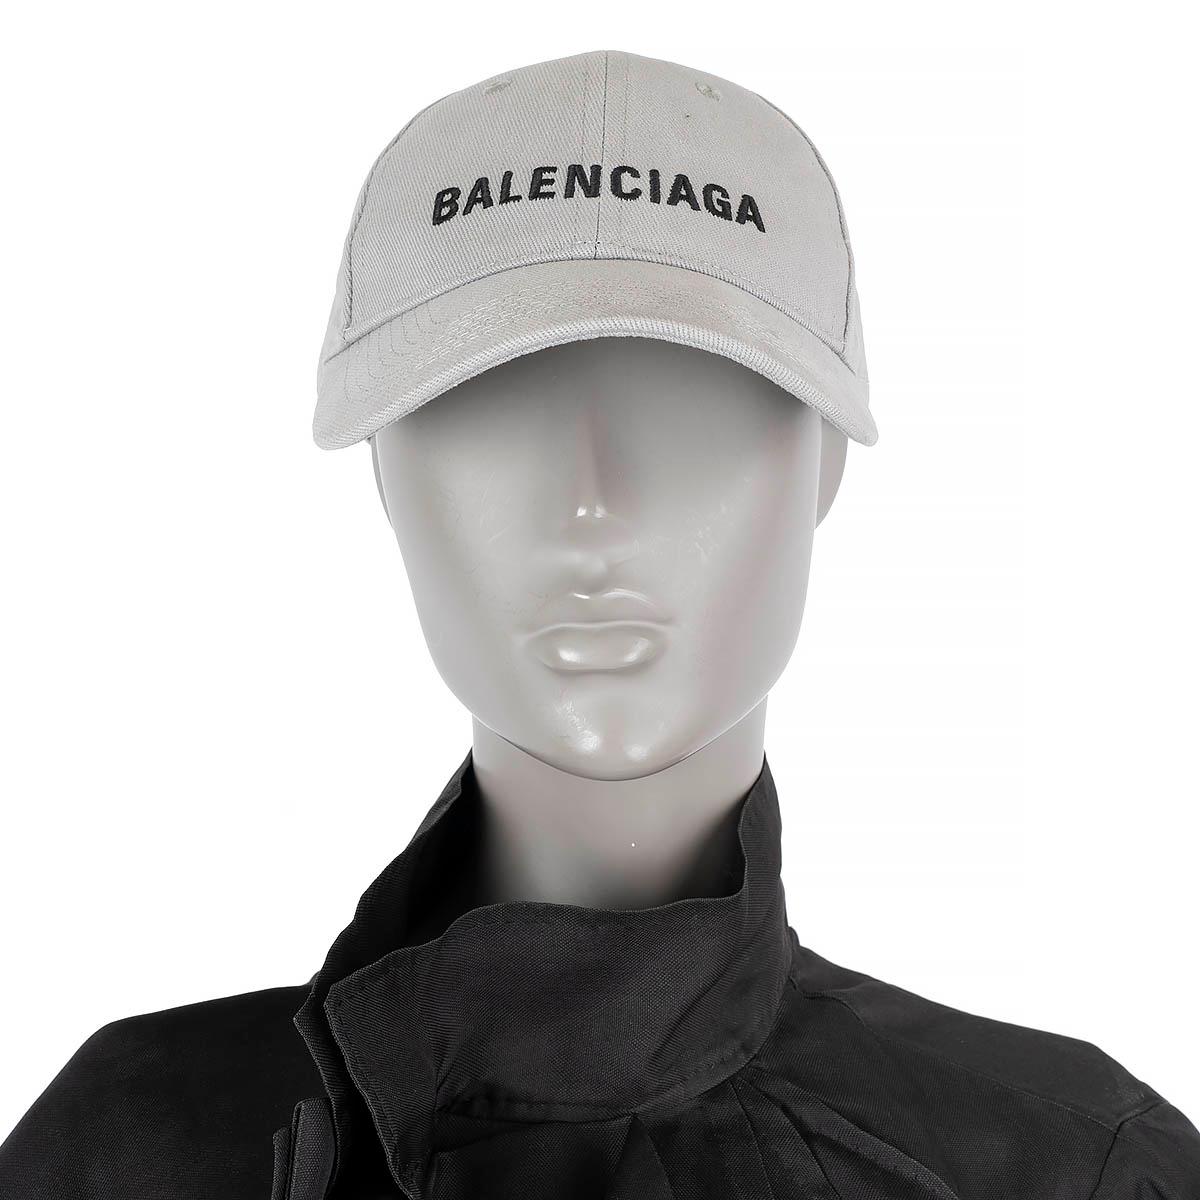 100% authentische Balenciaga Logo Baseballkappe aus hellgrauer Baumwolle. Wurde getragen und ist in ausgezeichnetem Zustand.

Messungen
Tag Größe	L/59
Innenumfang	56cm (21.8in)

Alle unsere Angebote umfassen nur den aufgeführten Artikel, sofern in